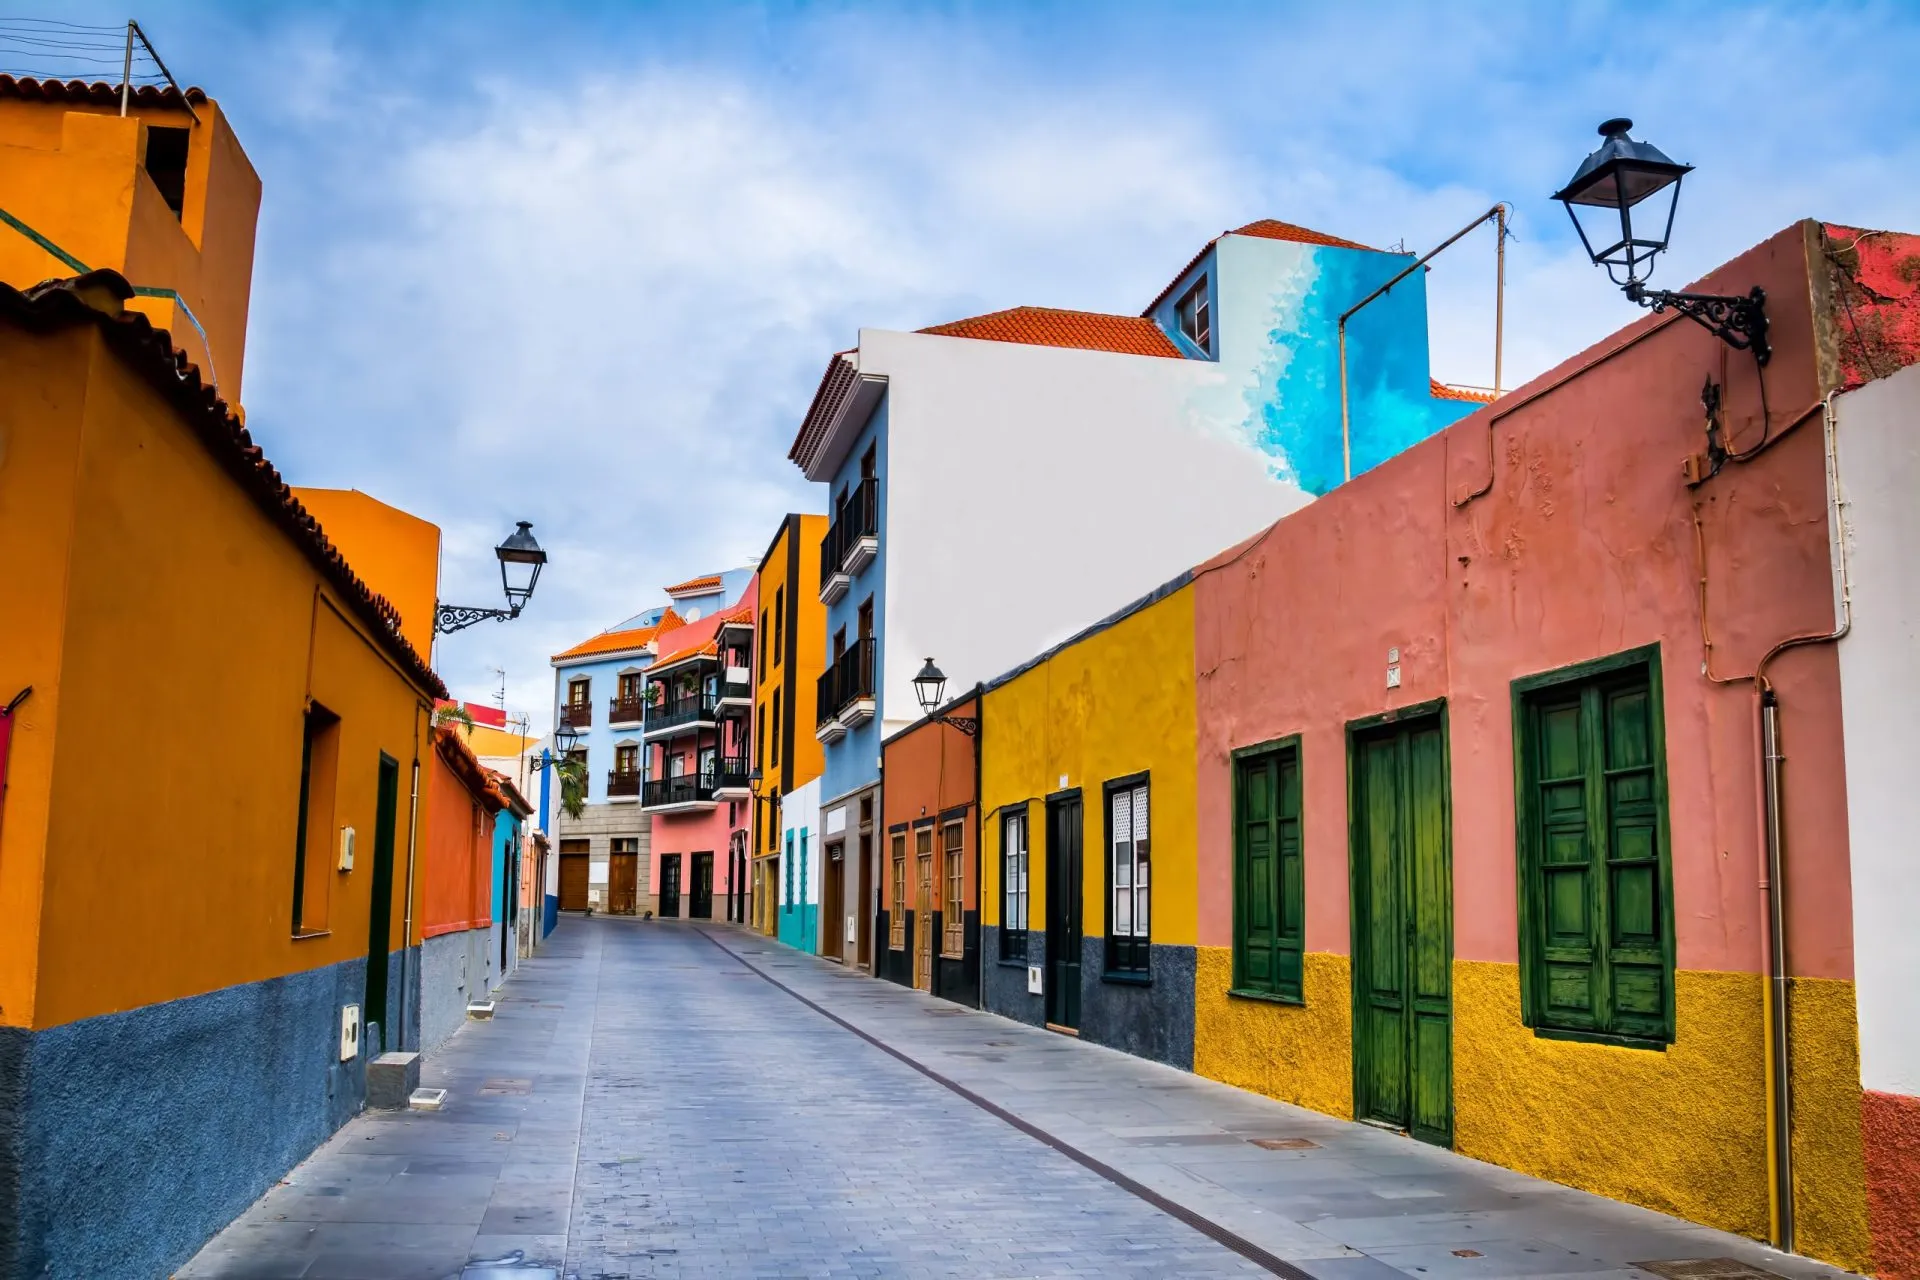 Farverige huse på en gade i Puerto de la Cruz by, Tenerife, De Kanariske Øer, Spanien. Det er en turistgågade tæt på havet, hvor der er mange restauranter og butikker.